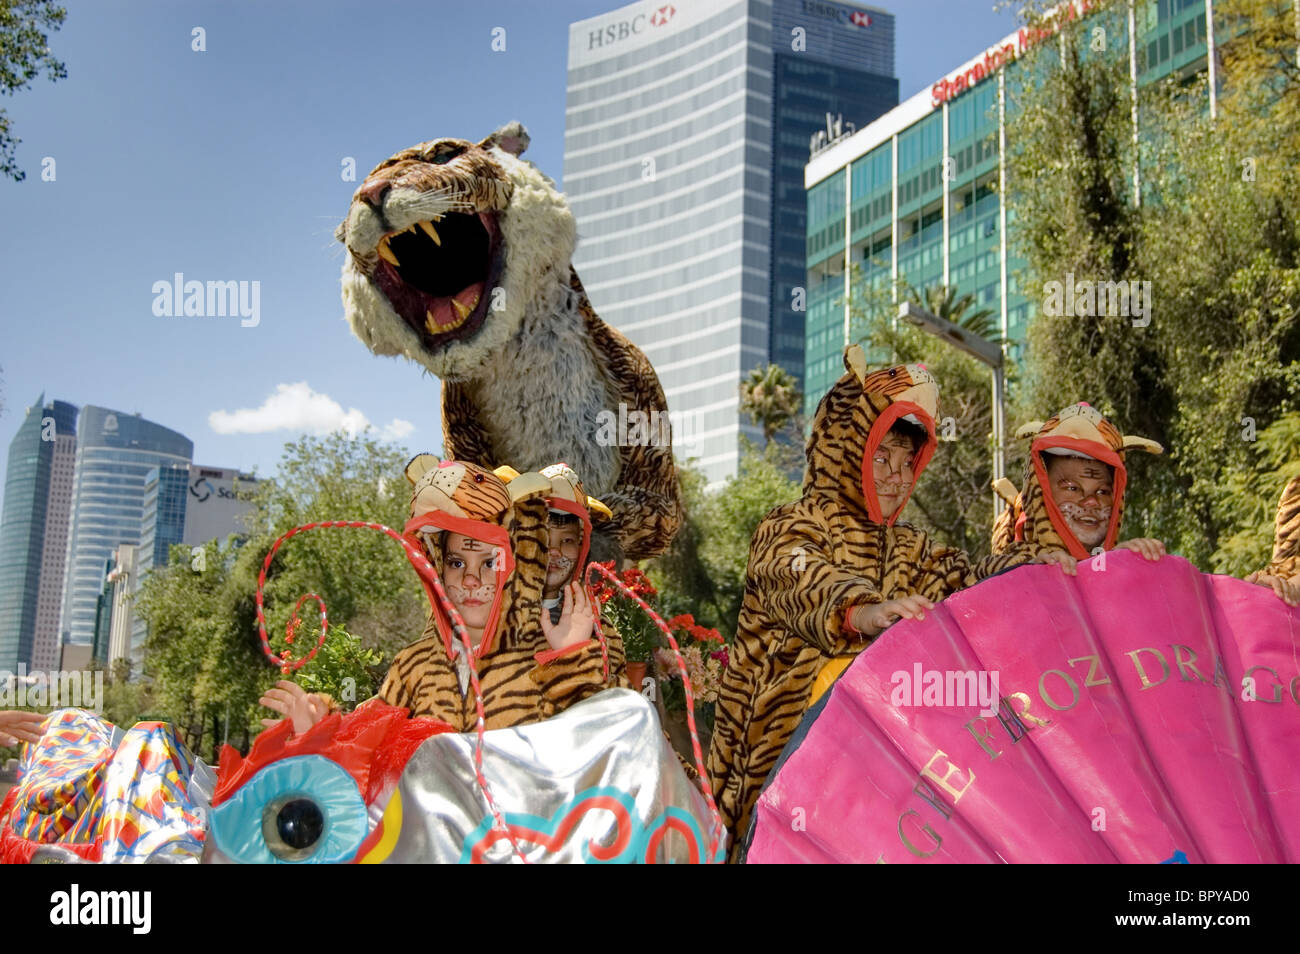 Costume da tigre immagini e fotografie stock ad alta risoluzione - Alamy